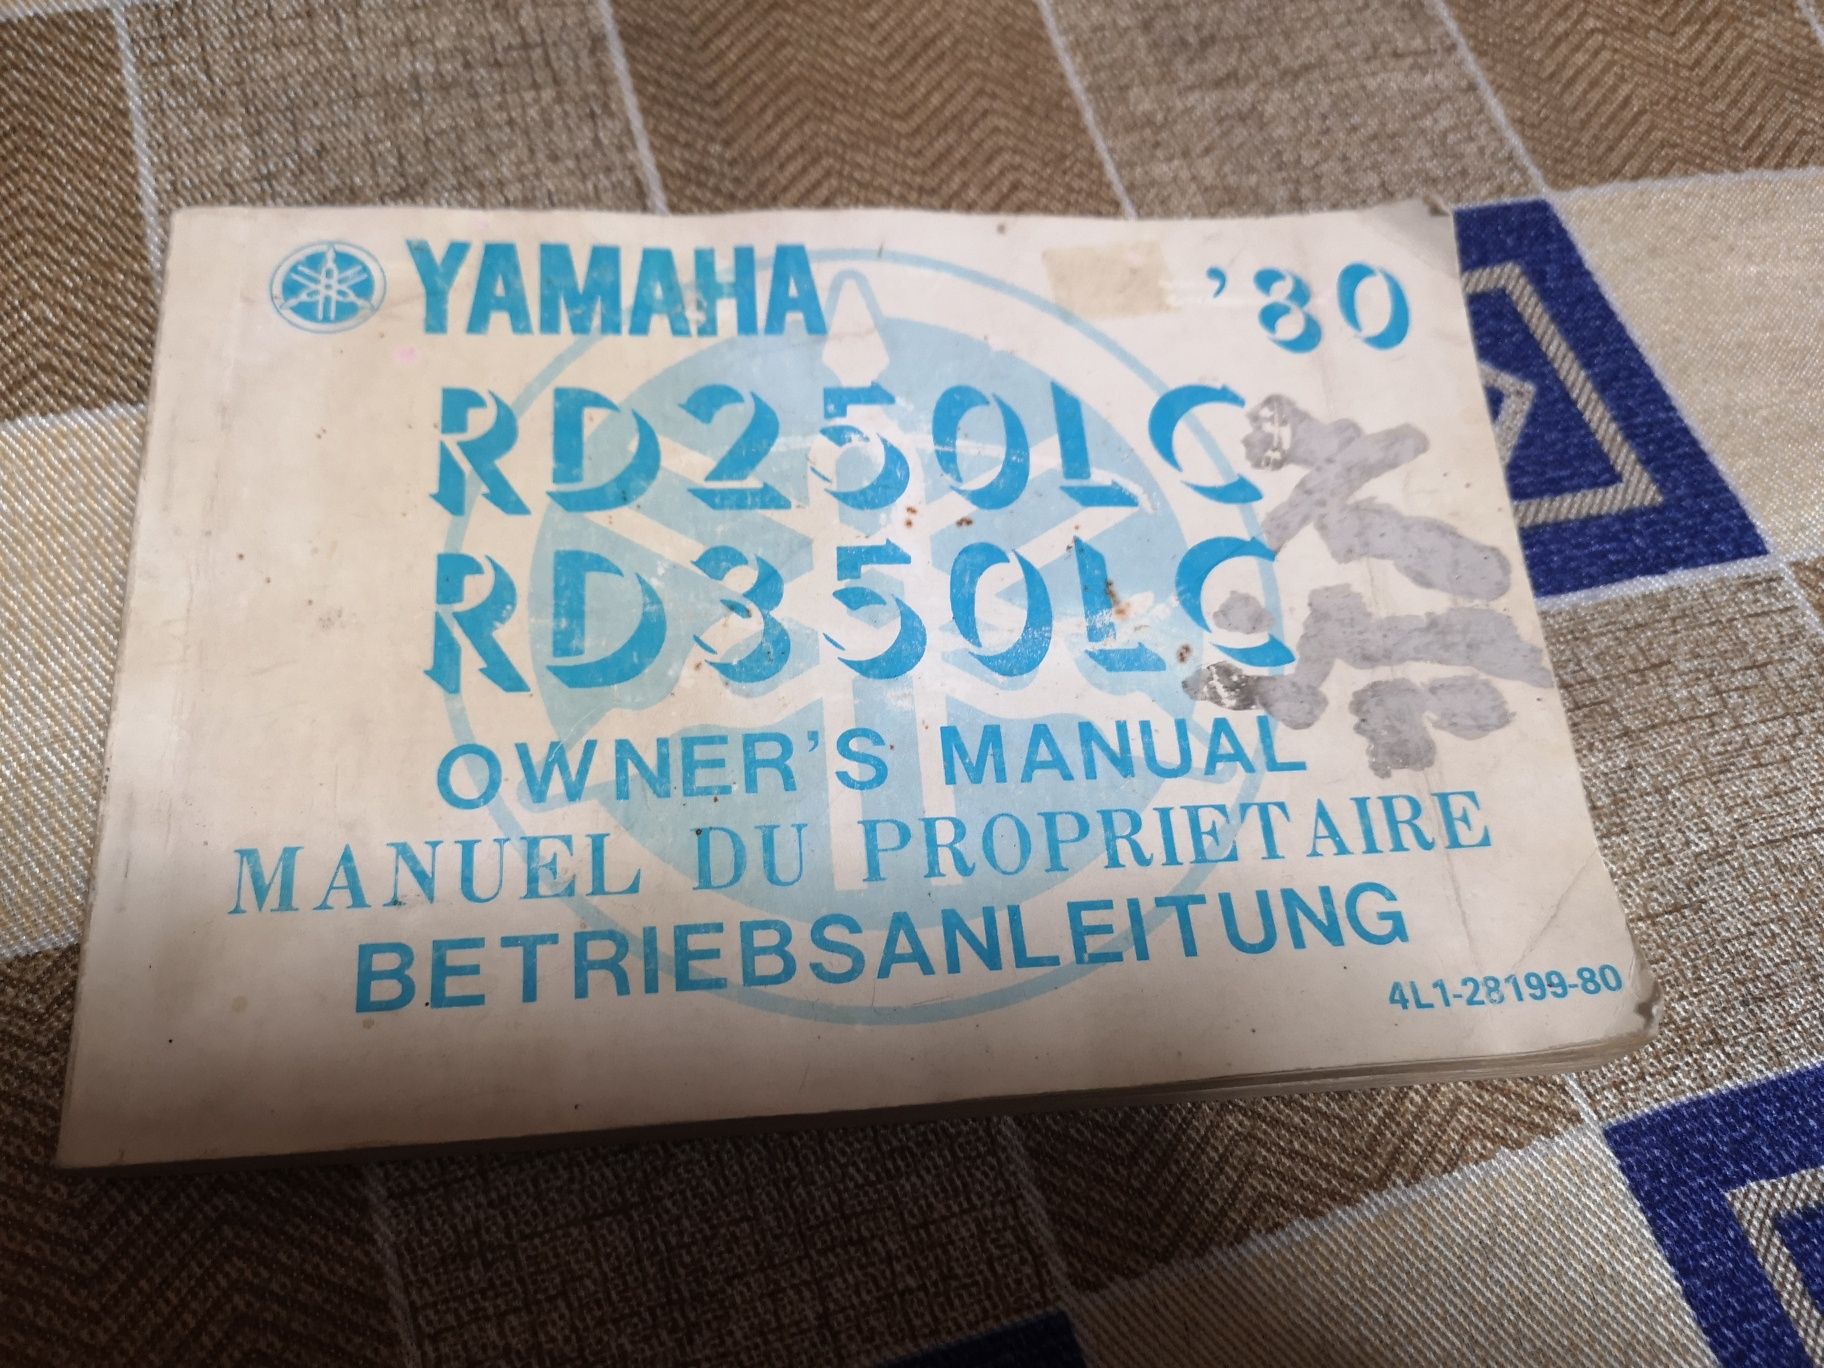 Livro de instruções da Yamaha RD 250 e 350